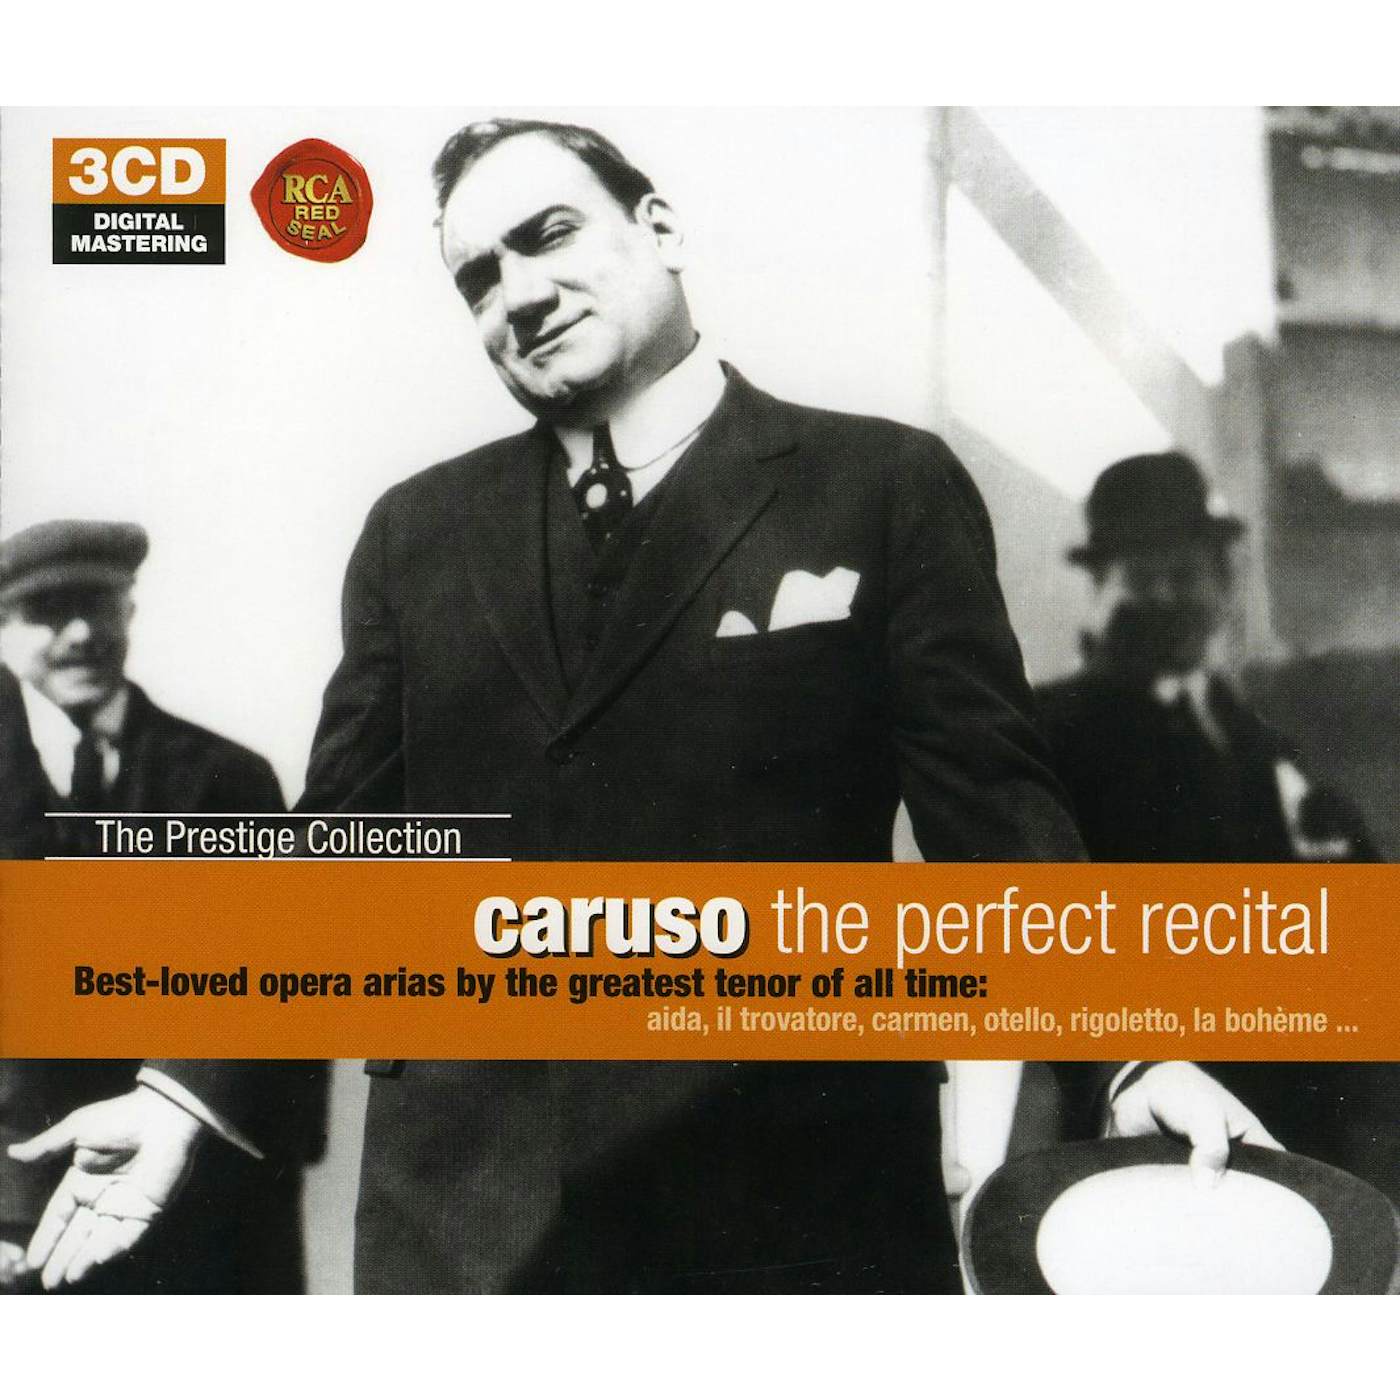 Enrico Caruso PERFECT RECITAL CD